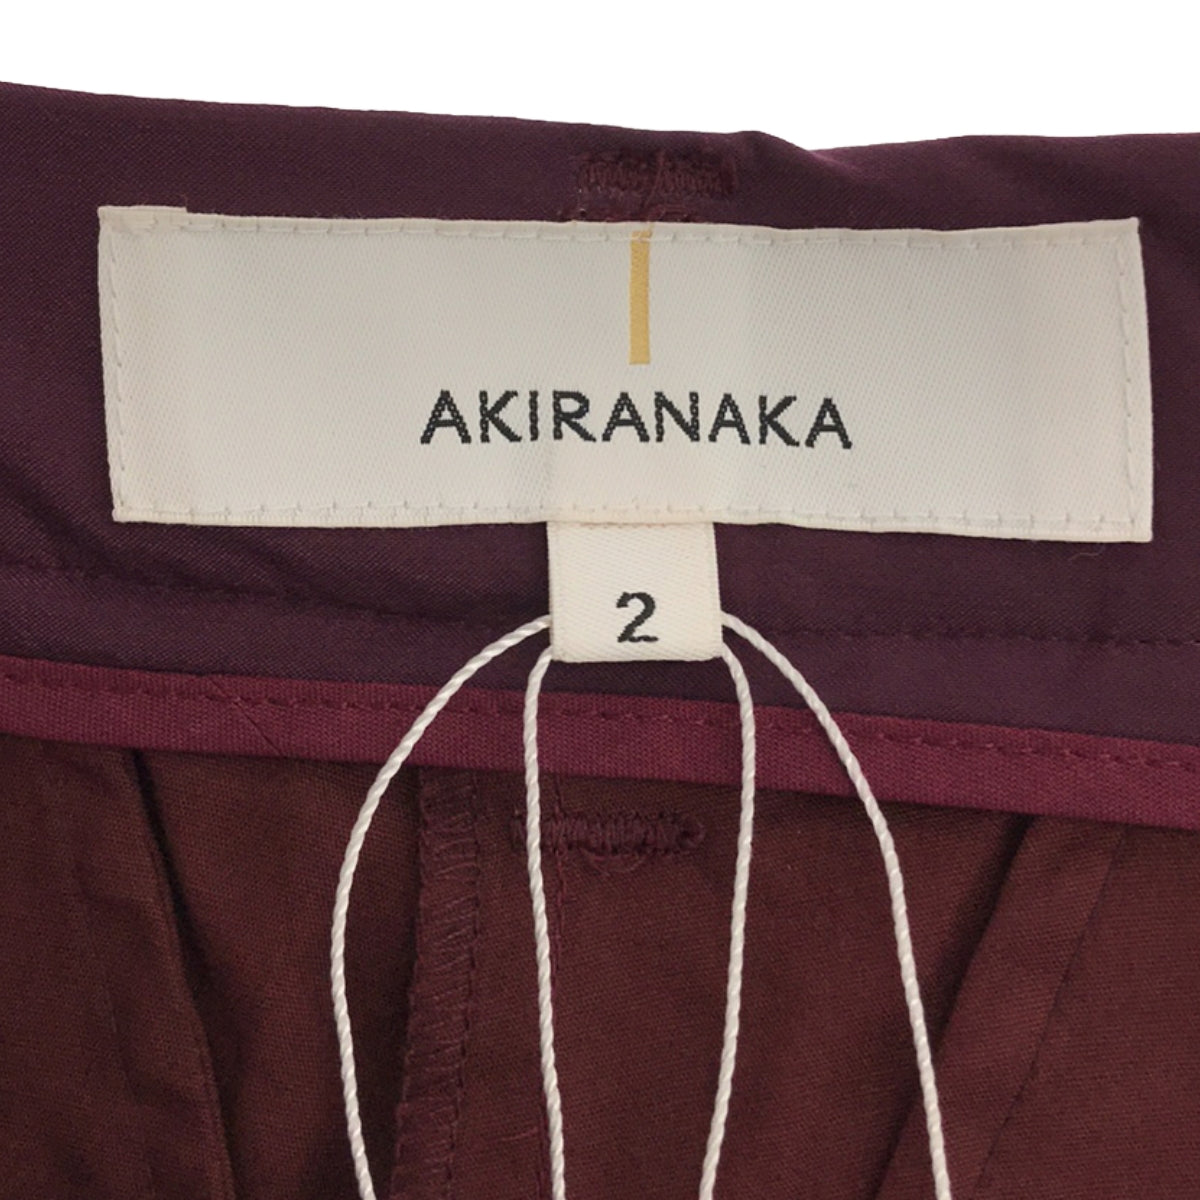 【新品】 AKIRANAKA / アキラナカ | pleats pants / レイヤード プリーツパンツ | 2 | purple | レディース